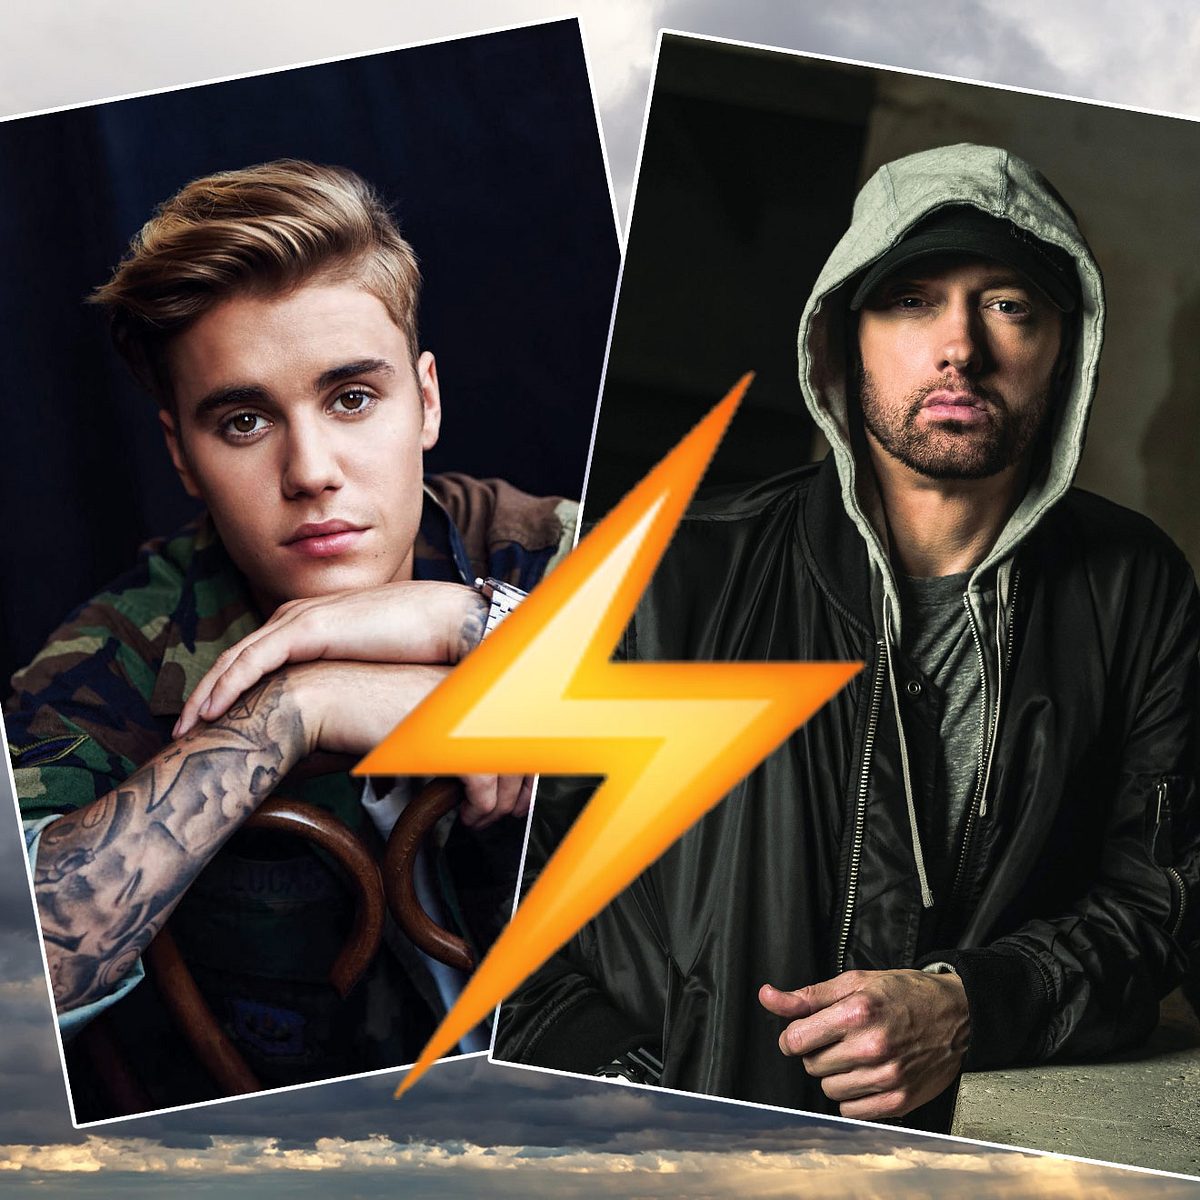 Justin Bieber findet Eminems Einstellung gegenüber Nachwuchskünstlern nicht ok